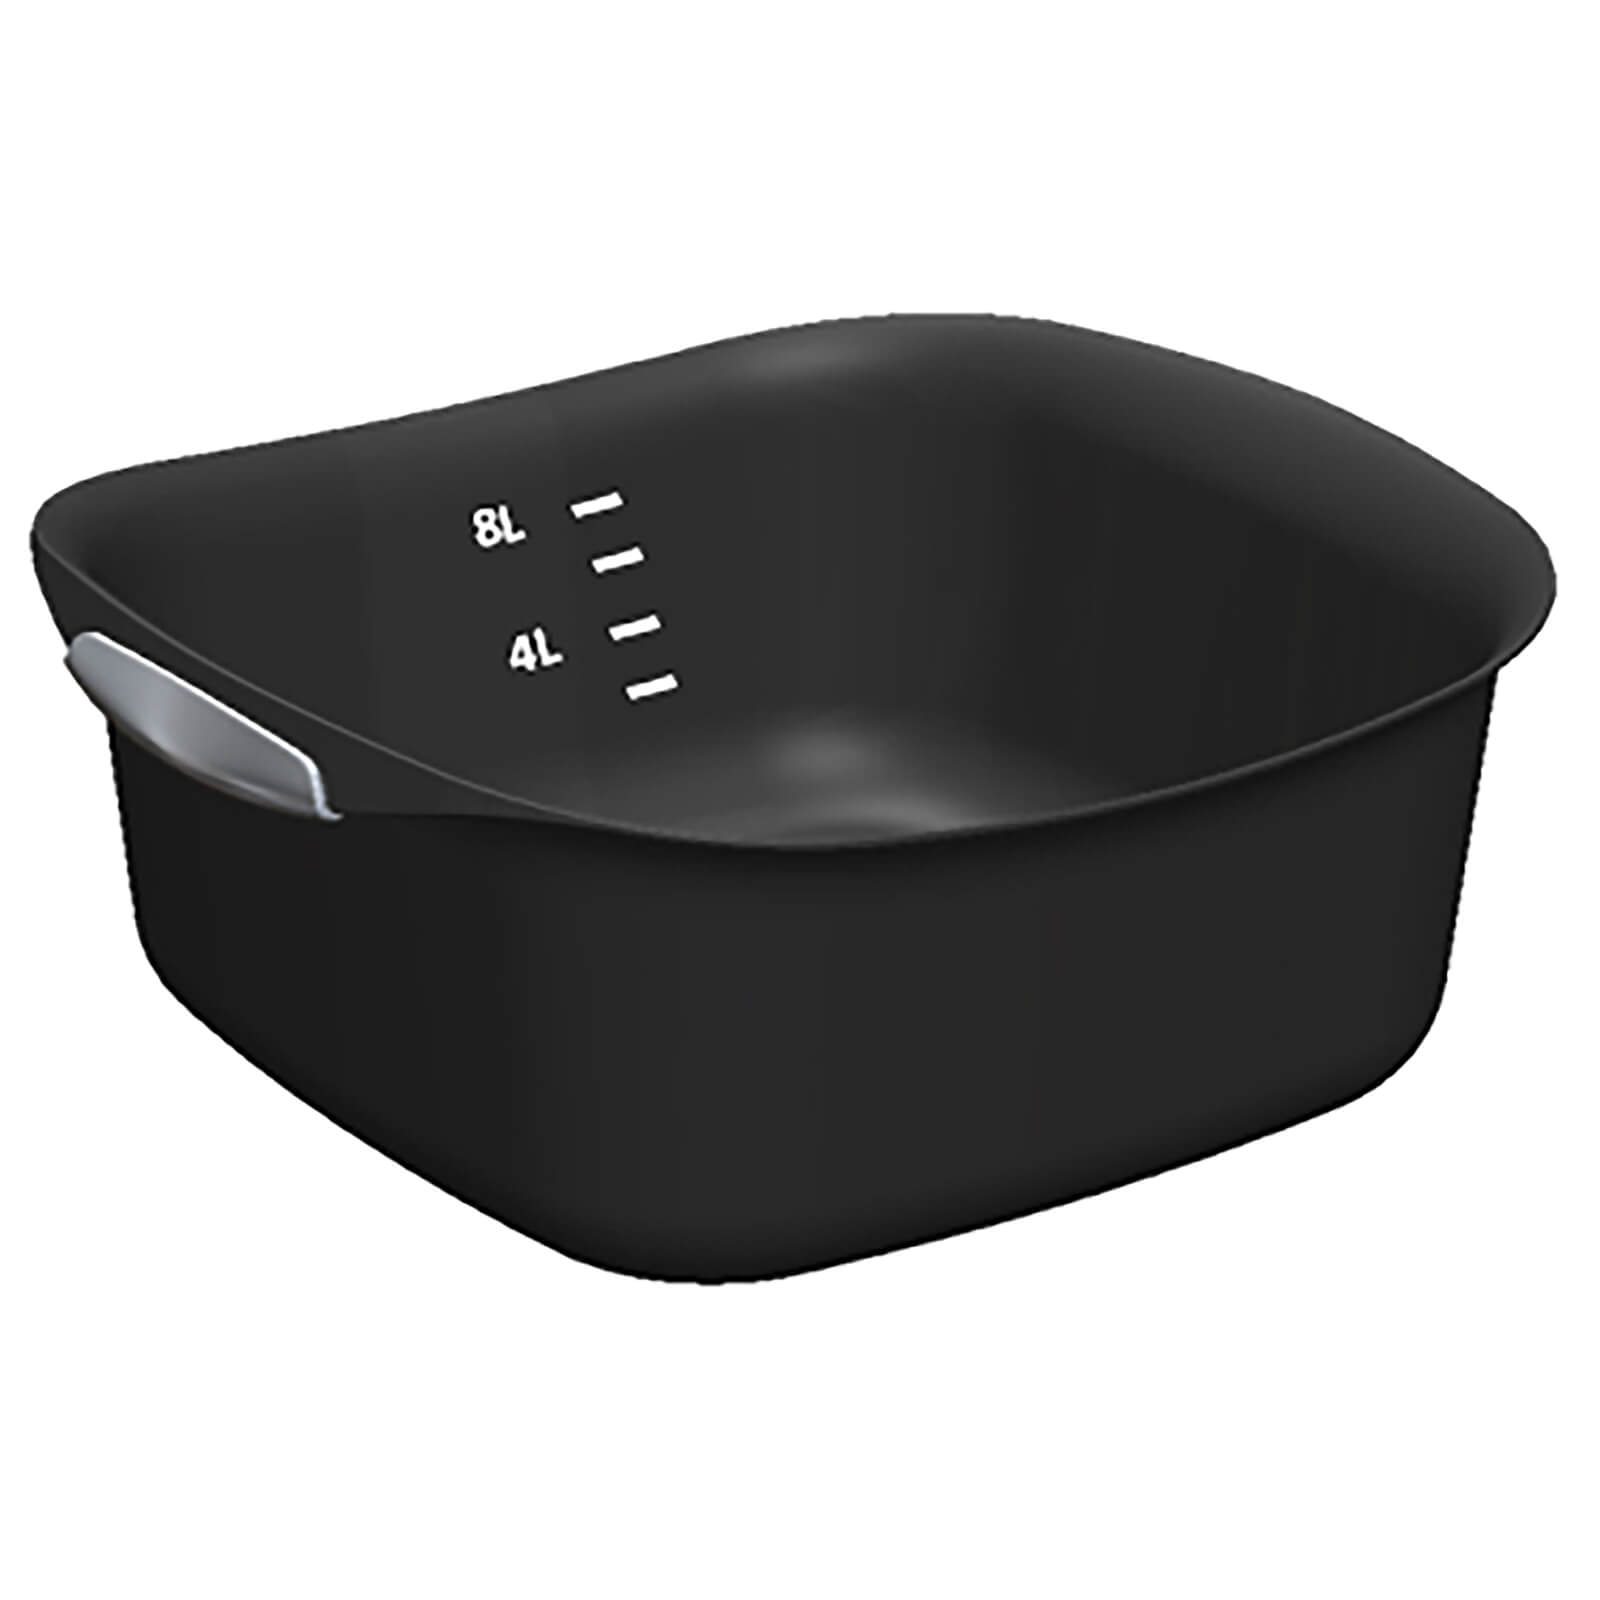 Curver Urban Plastic Rectangle Kitchen Bowl Black 8L